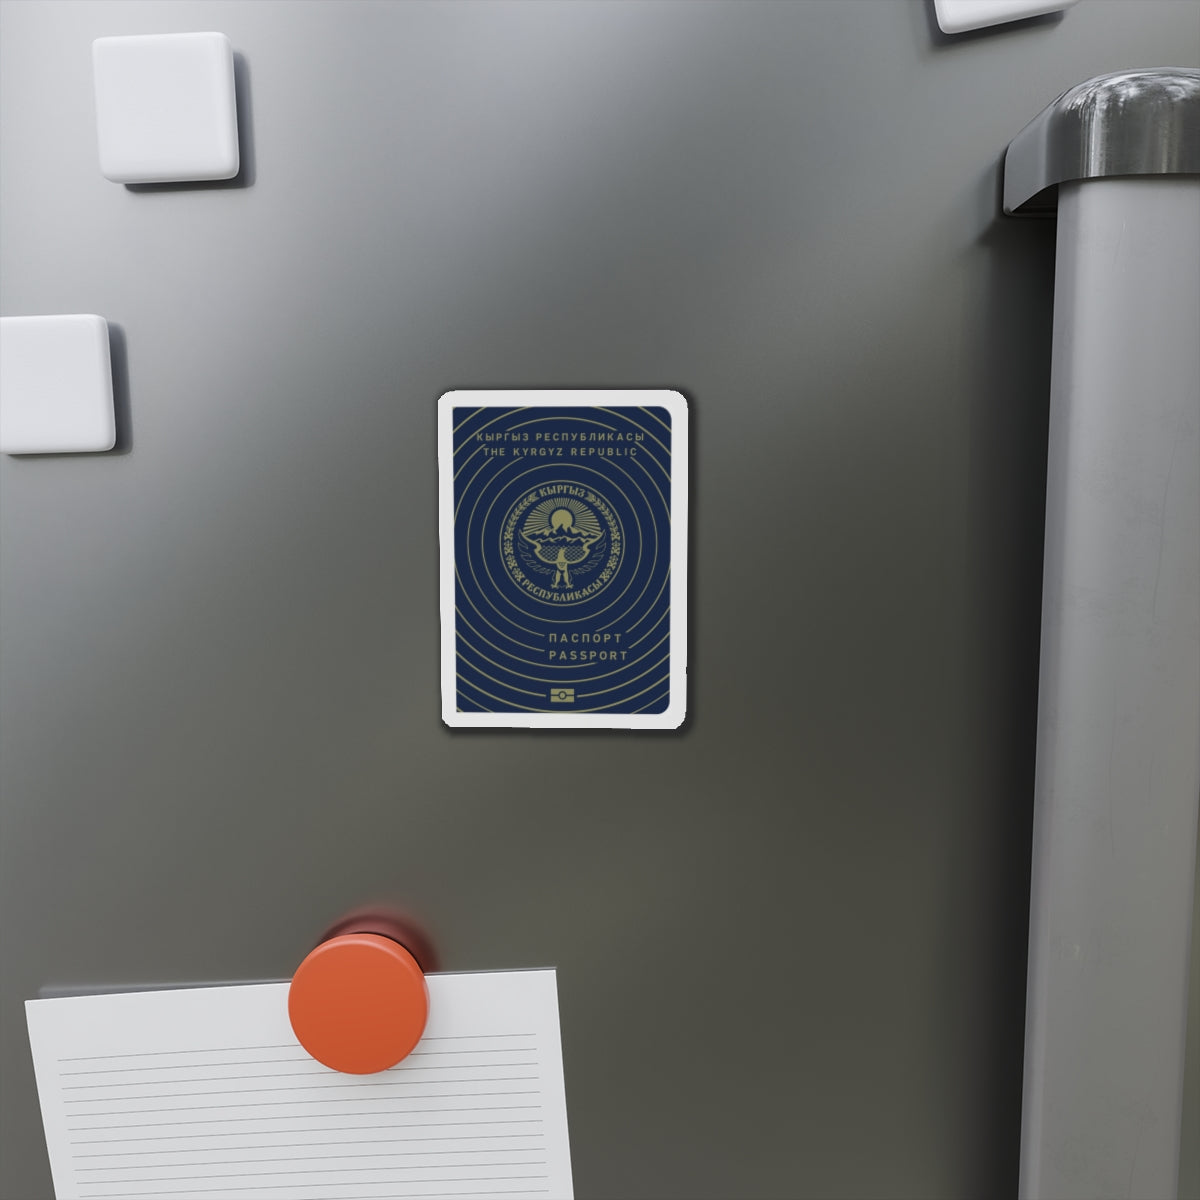 Kyrgyzstan Passport - Die-Cut Magnet-The Sticker Space